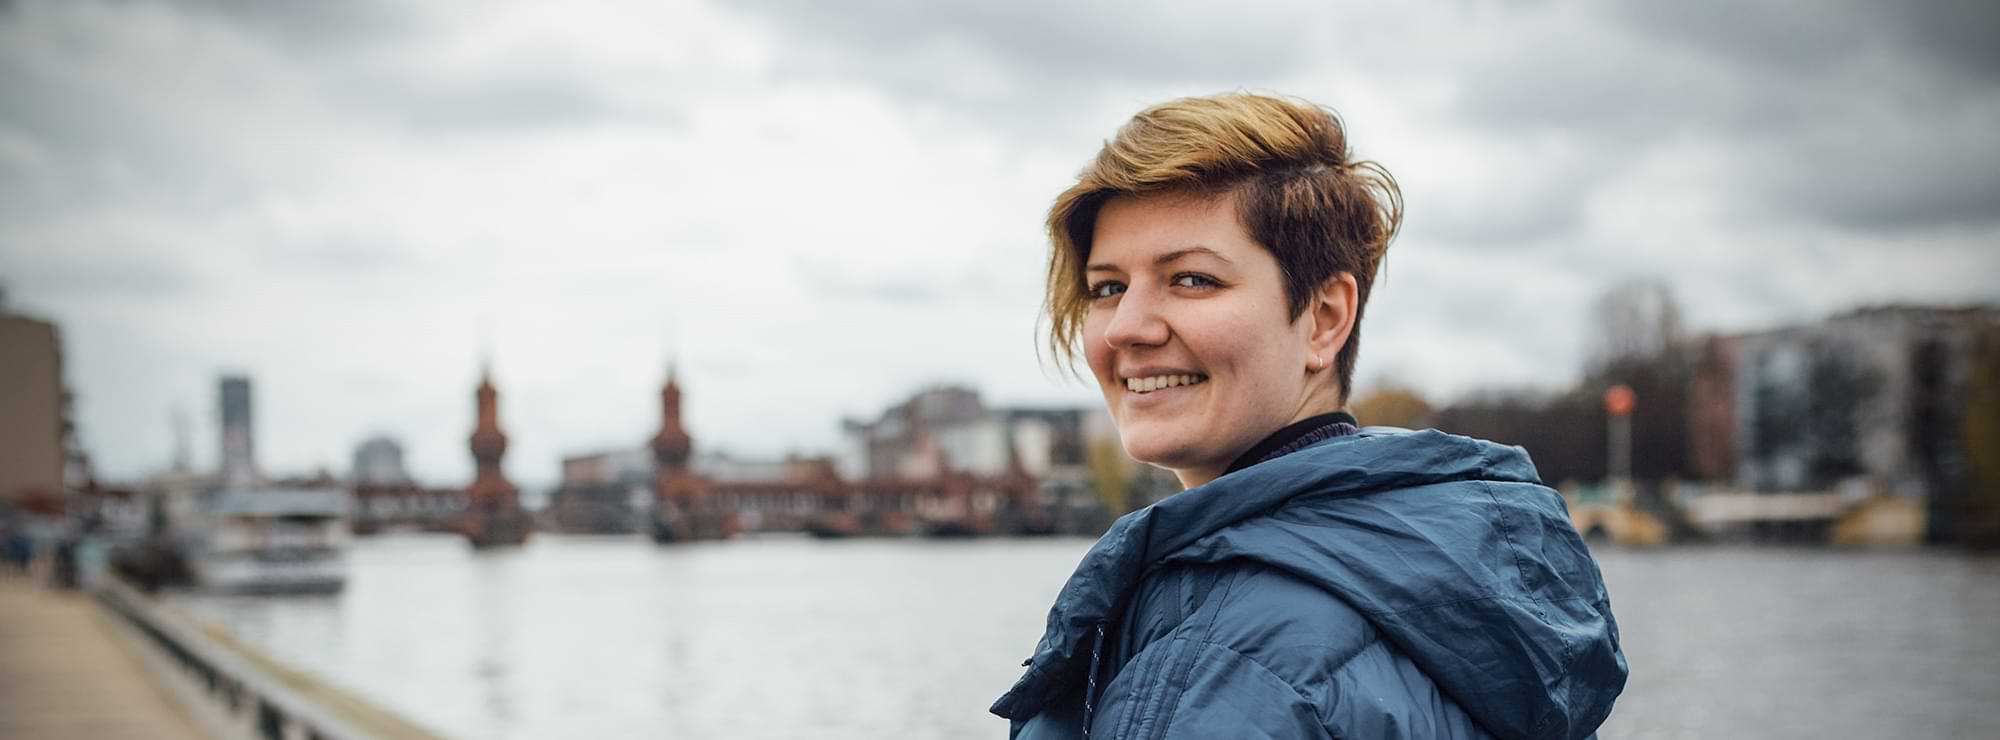 Franziska Krause in Berlin vor der Oberbaumbrücke und der Spree, blickt lachend in die Kamera